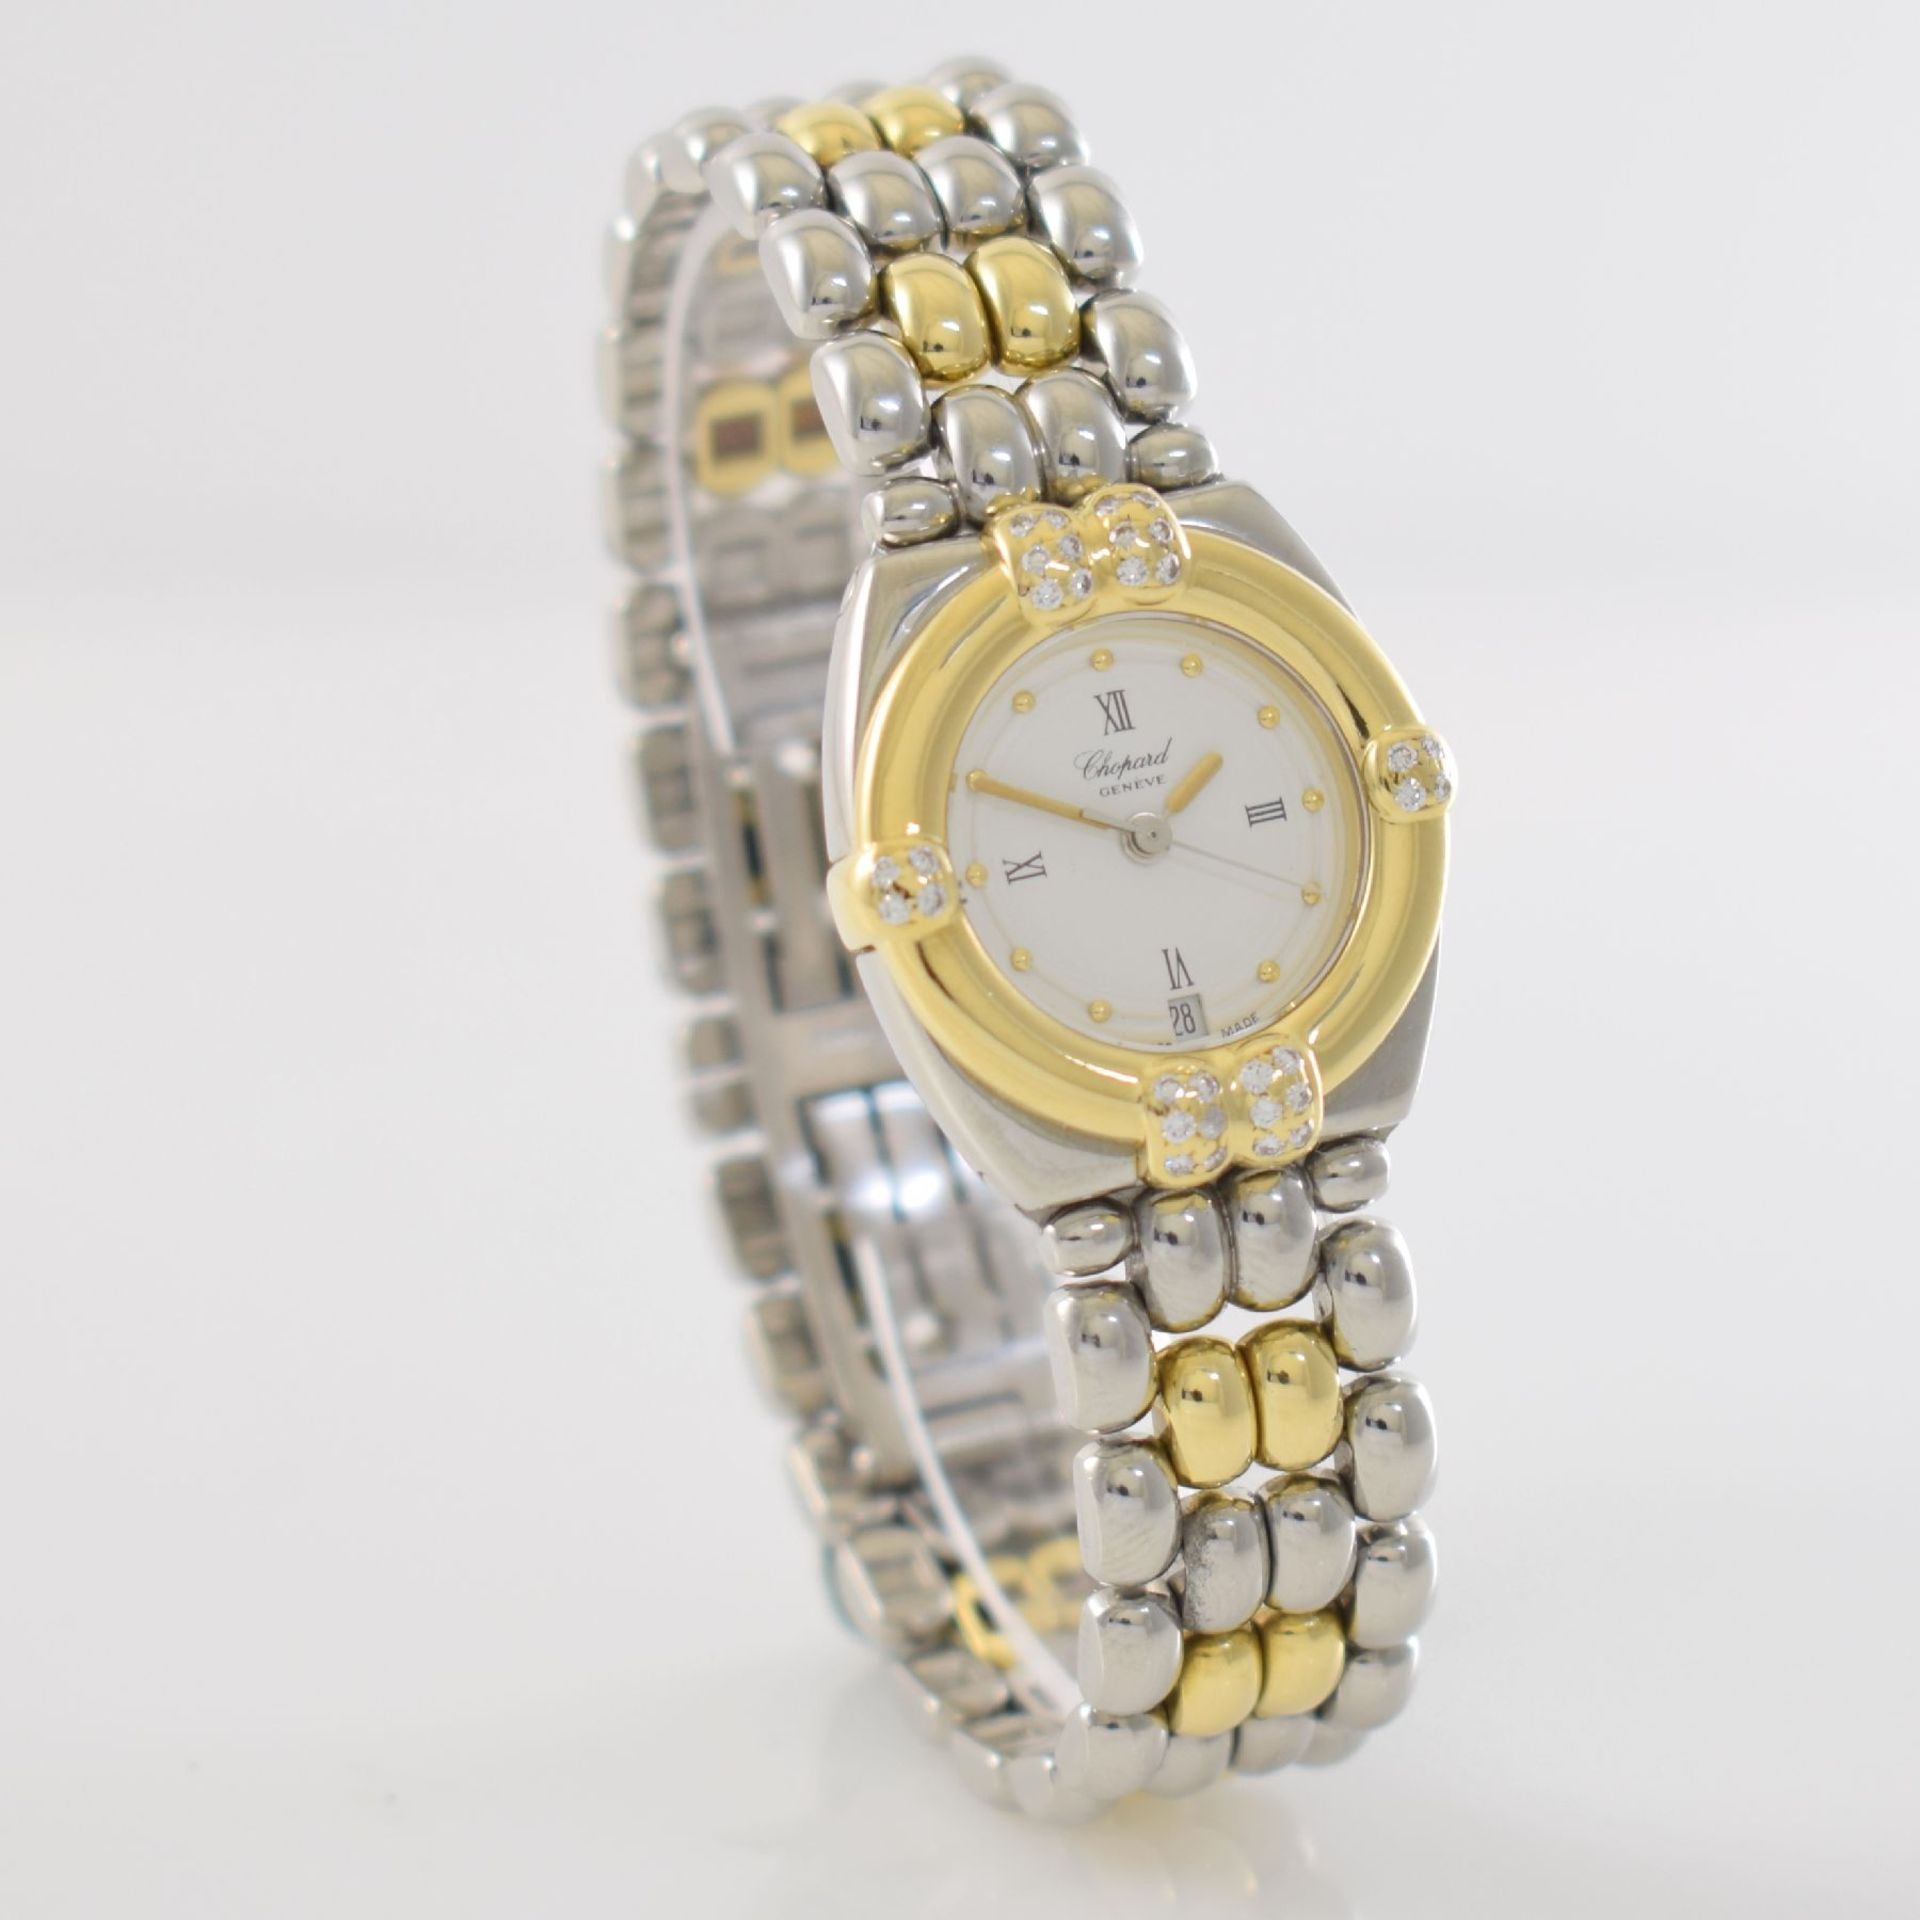 CHOPARD ladies wristwatch series Gstaad, Switzerland around 2000, quartz, stainless steel/gold - Bild 5 aus 7